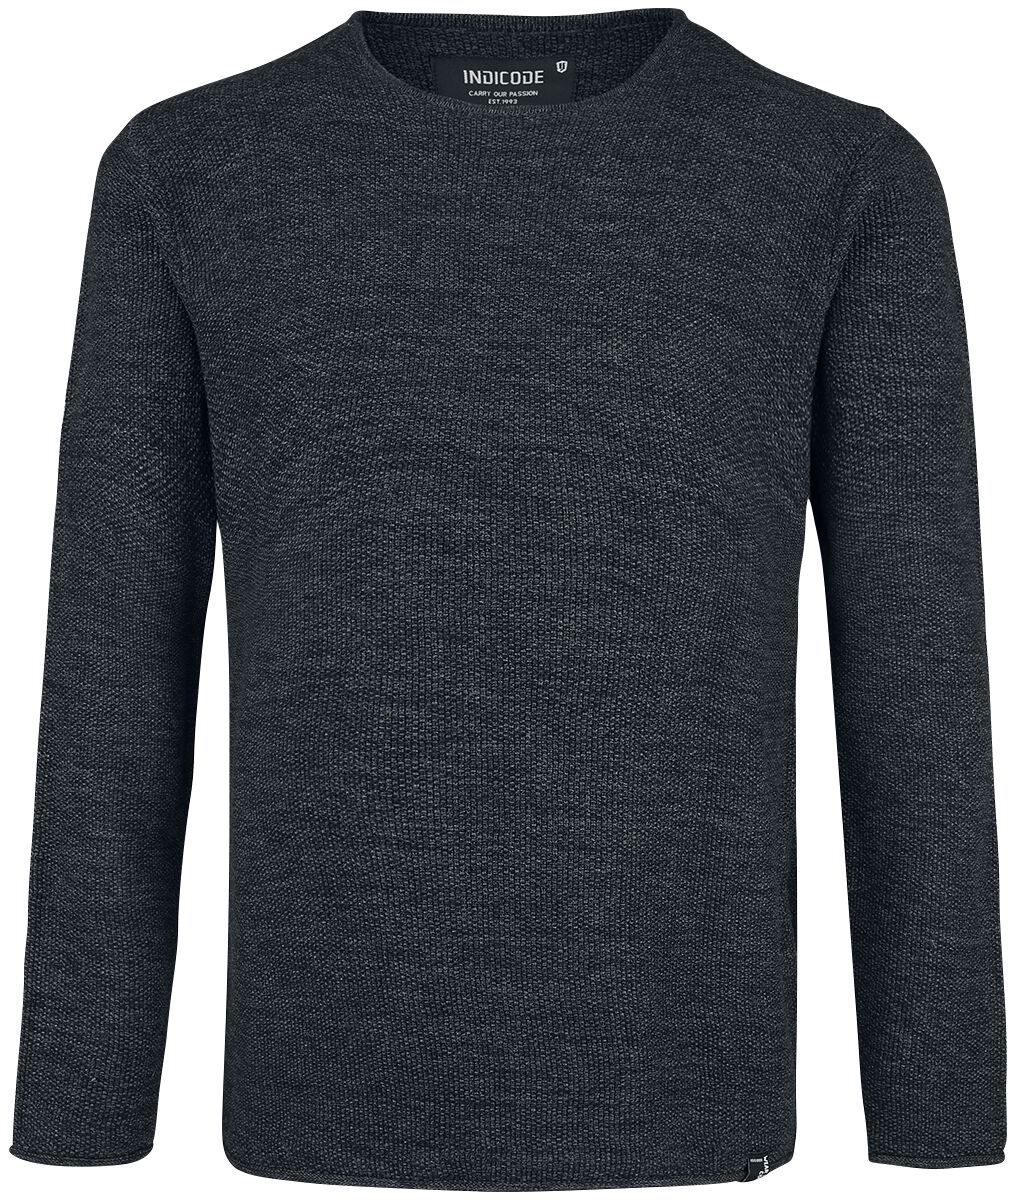 Indicode Sweatshirt - Kristian - S bis XXL - für Männer - Größe L - schwarz